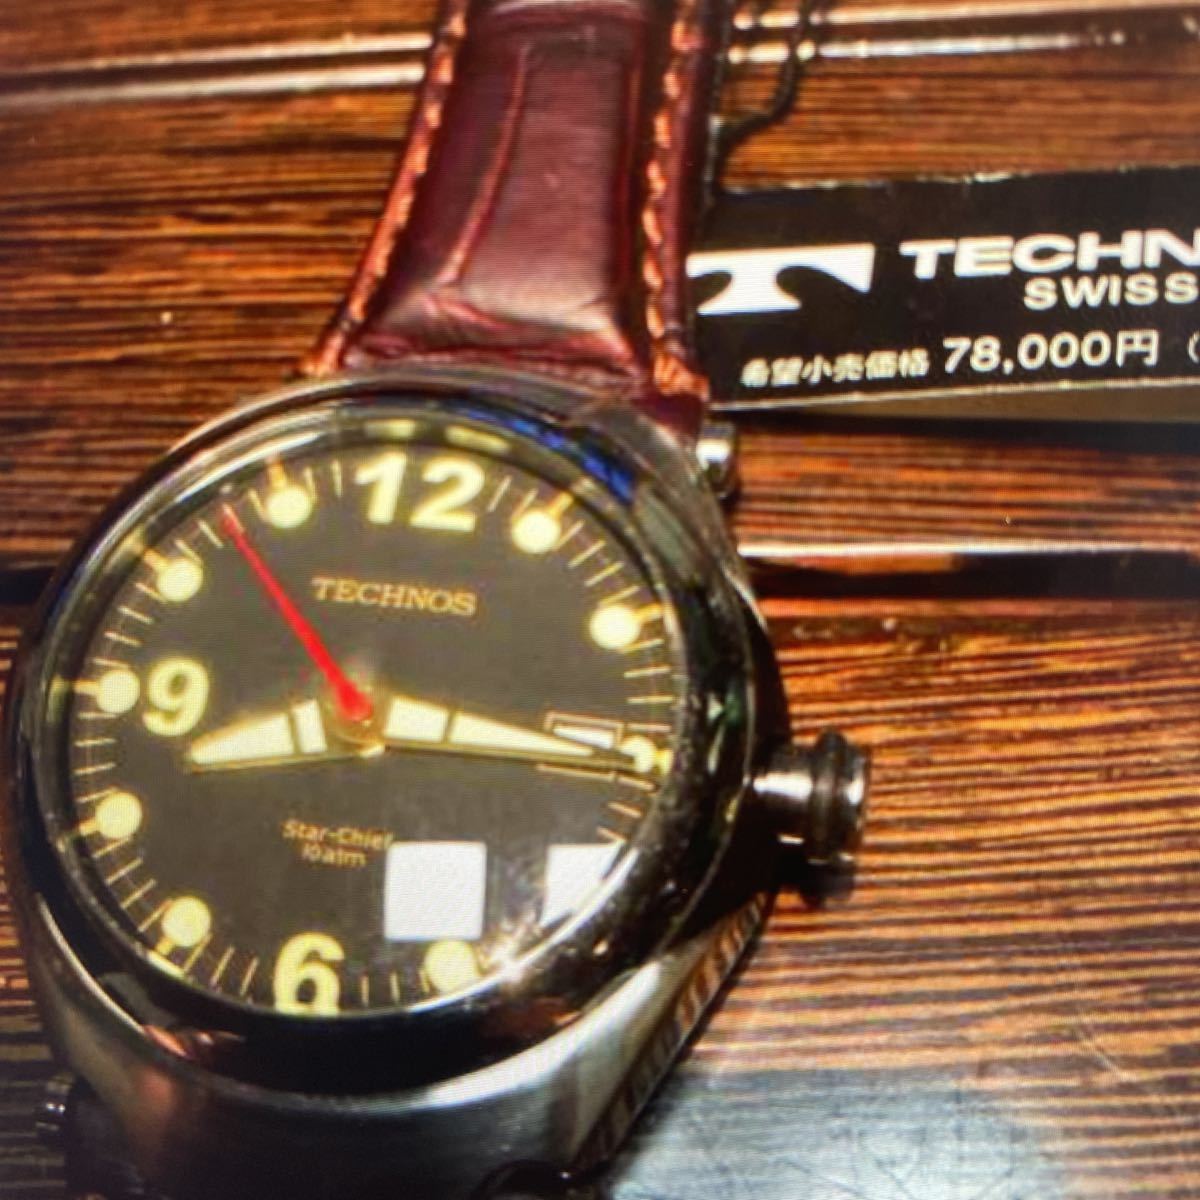 テクノス腕時計メンズ 新品未使用品 定価78000円 アクセサリー、時計